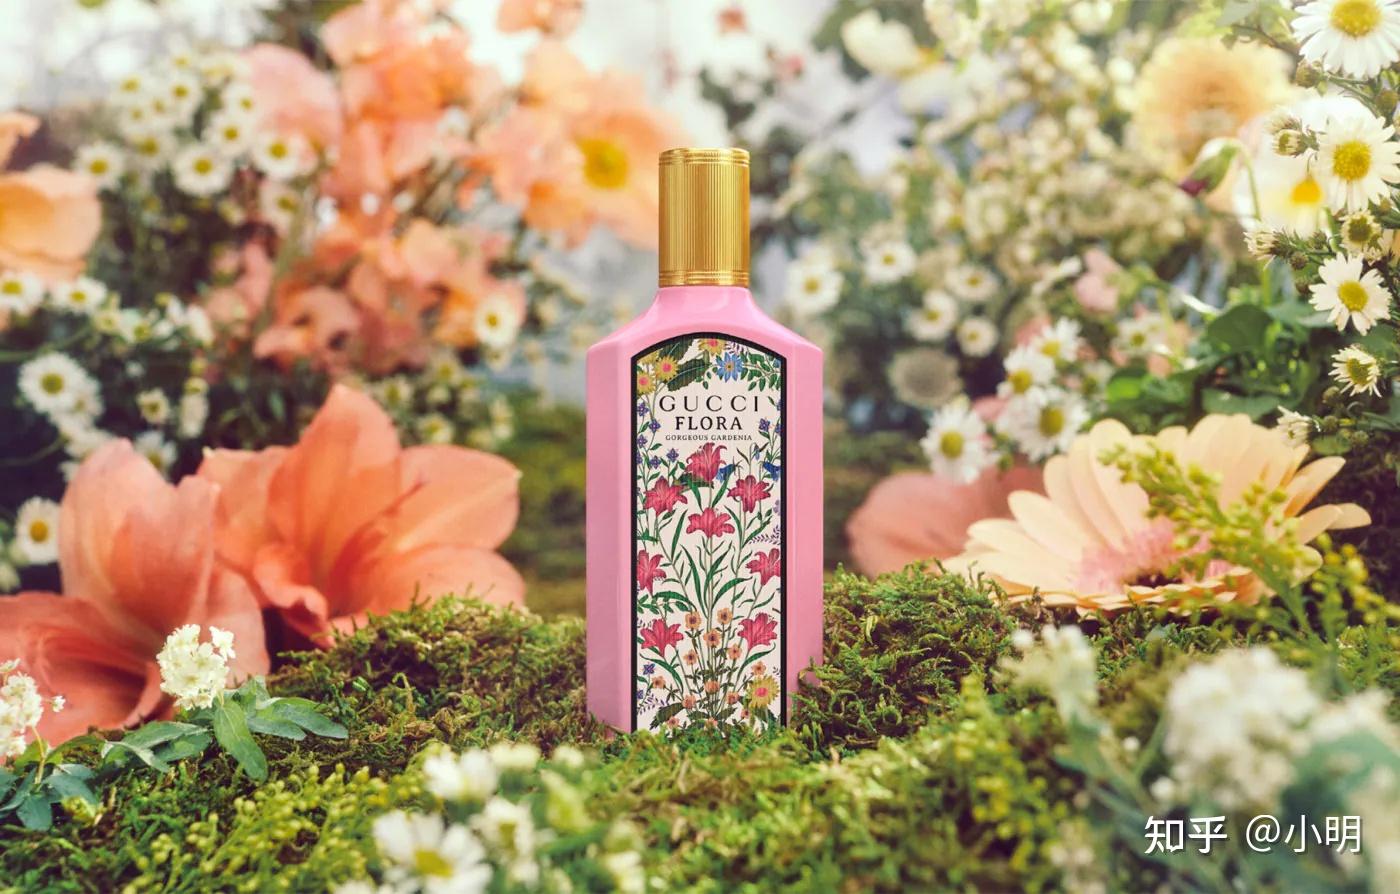 2021年9月gucci推出绮梦花园系列香水,除了将香水本身馥郁的栀子花